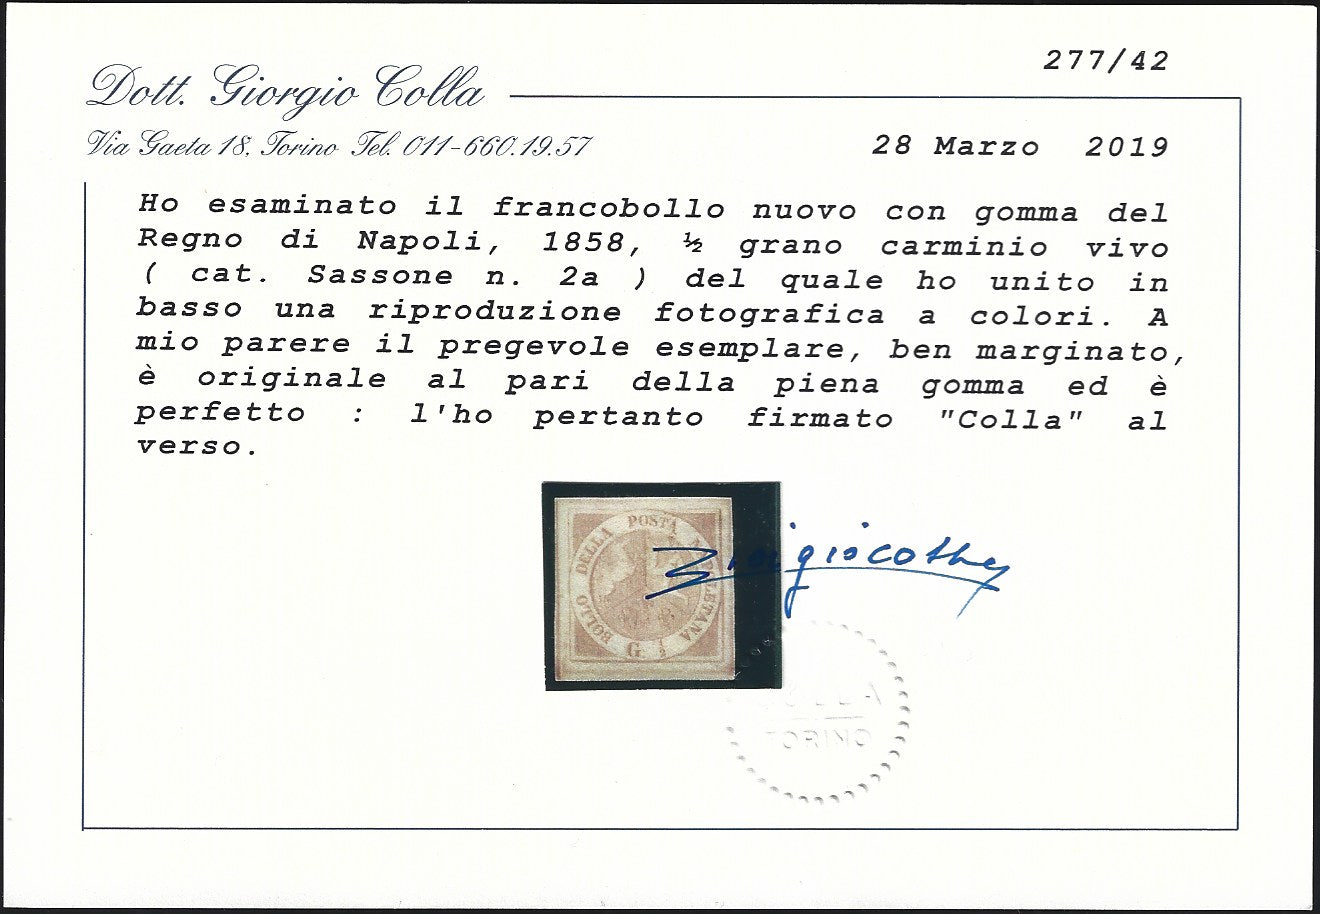 1858 - Stemma delle Due Sicilie 1/2 grano carminio vivo II tavola nuovo con gomma originale (2a)